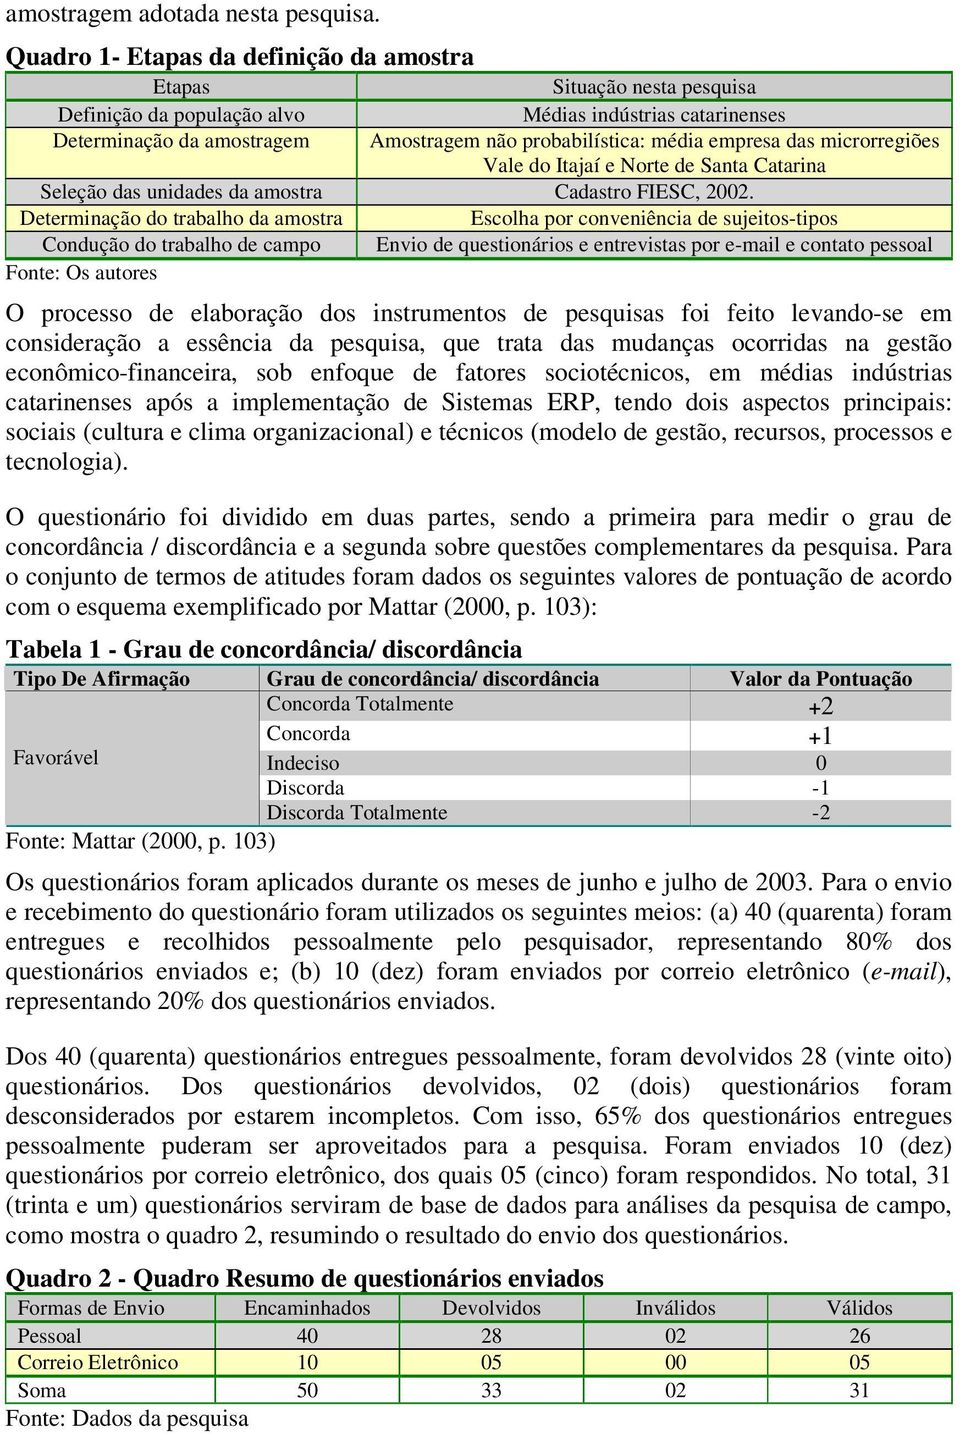 empresa das microrregiões Vale do Itajaí e Norte de Santa Catarina Seleção das unidades da amostra Cadastro FIESC, 2002.